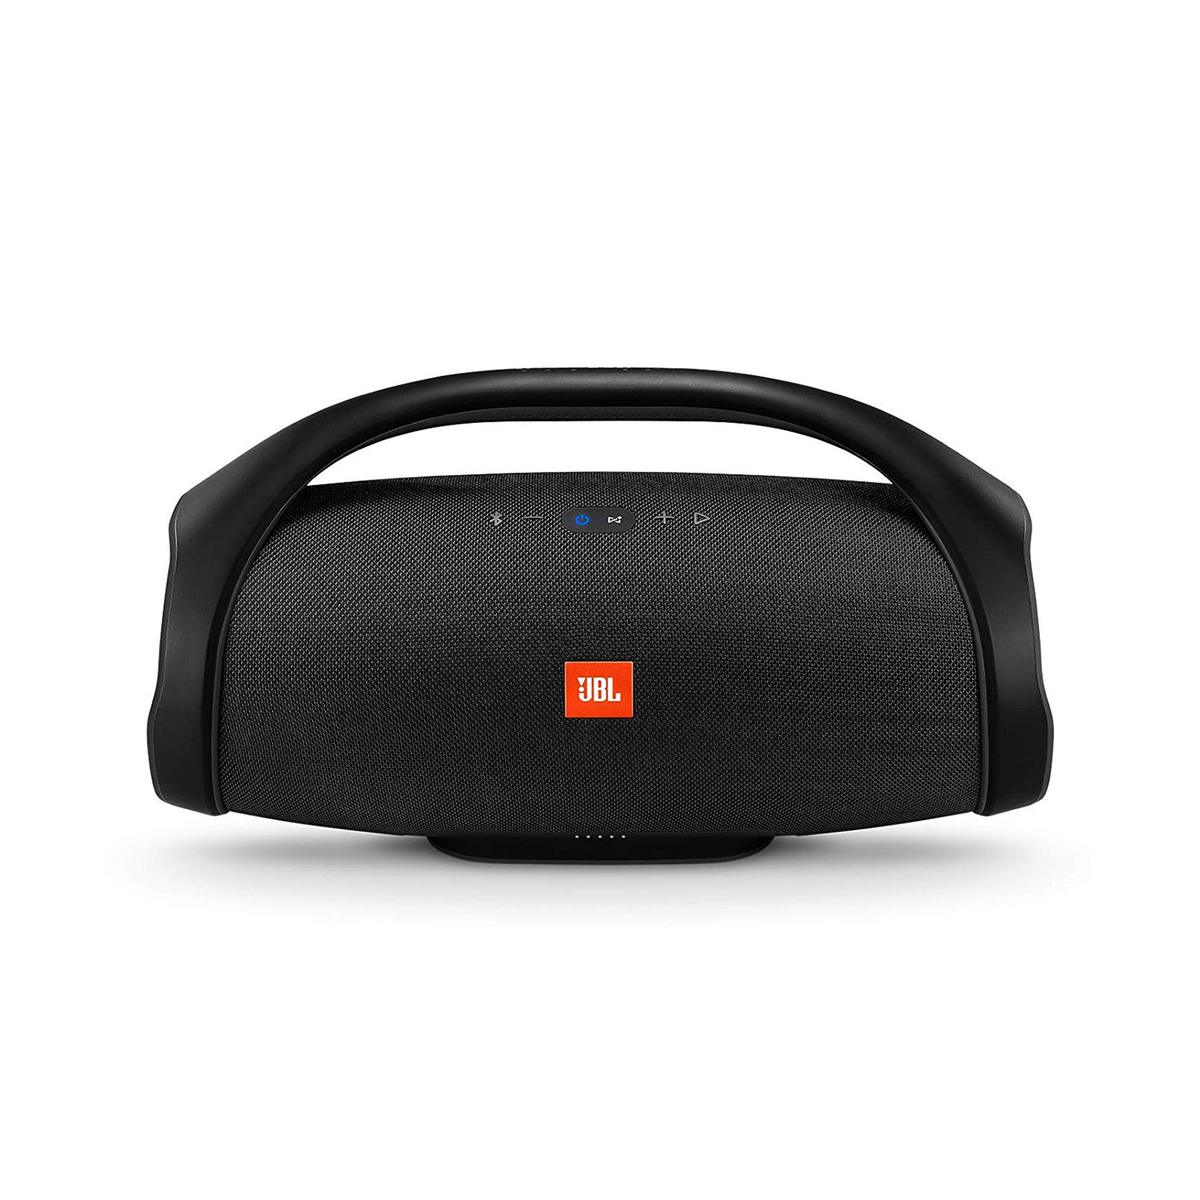 JBL Portable Bluetooth Speaker JBL BOOMBOX Black